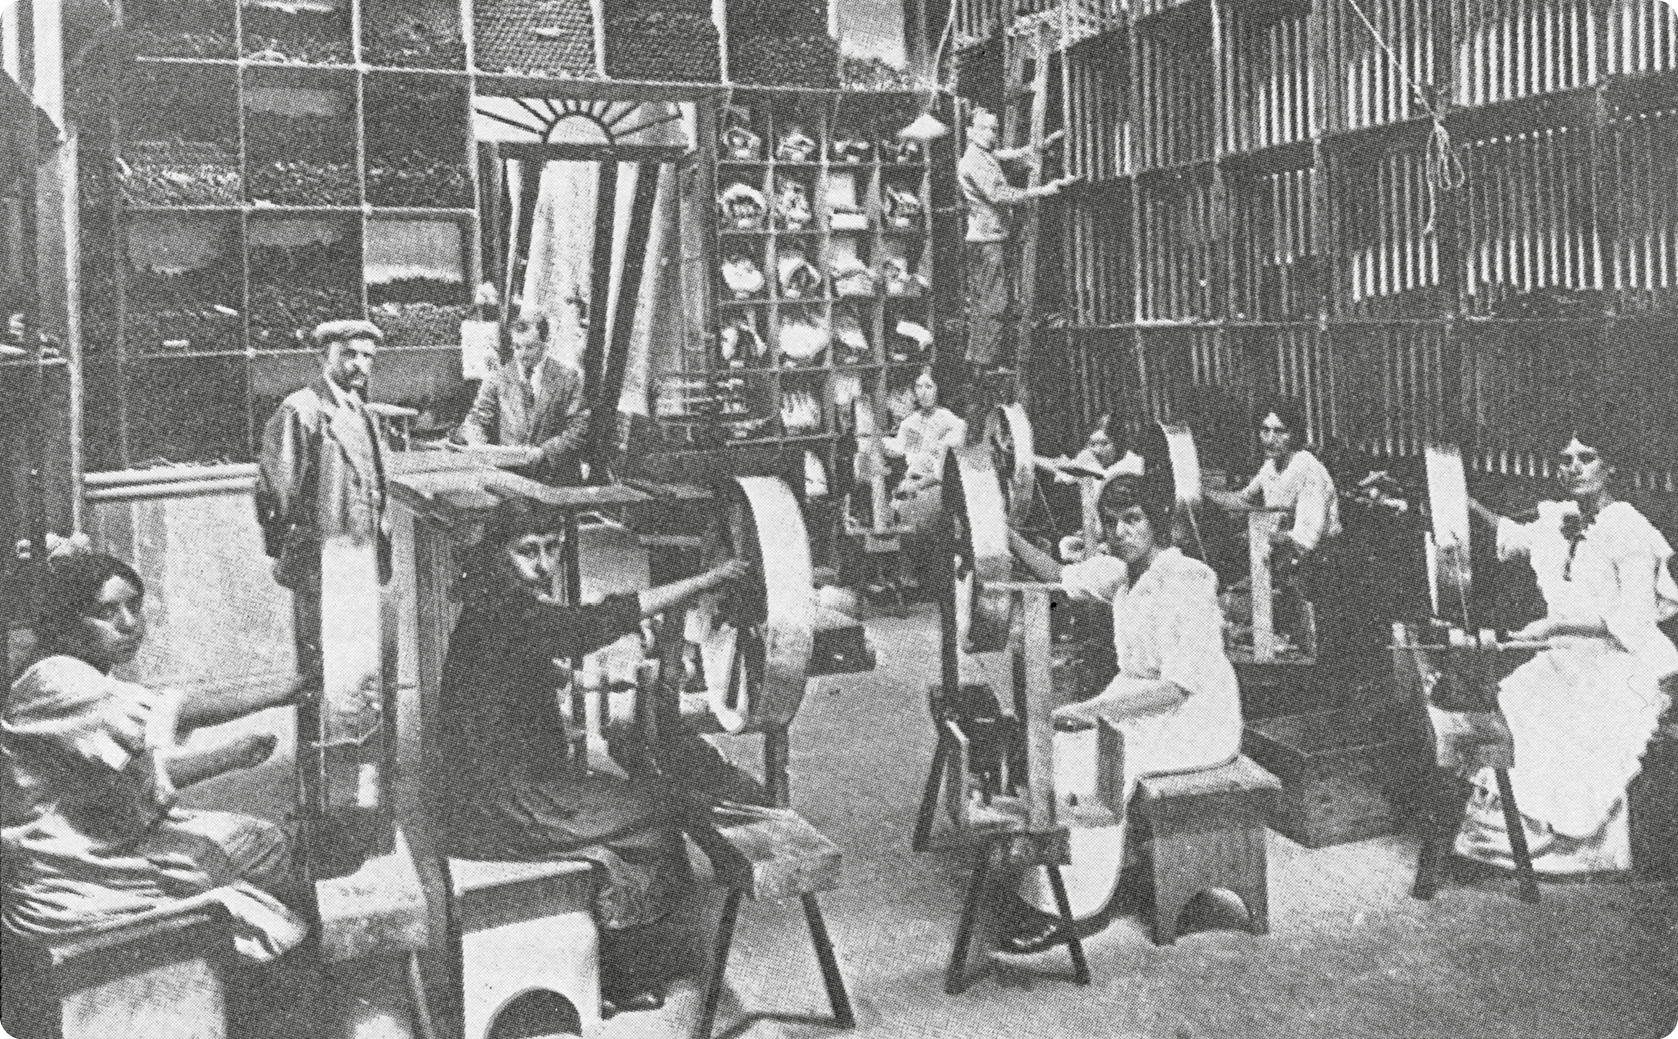 Fotografia em preto e branco. No primeiro plano, mulheres usando vestido, sentadas em bancos e com as mãos sobre uma pequena máquina de tecido. Ao fundo, homens, com terno, em pé.